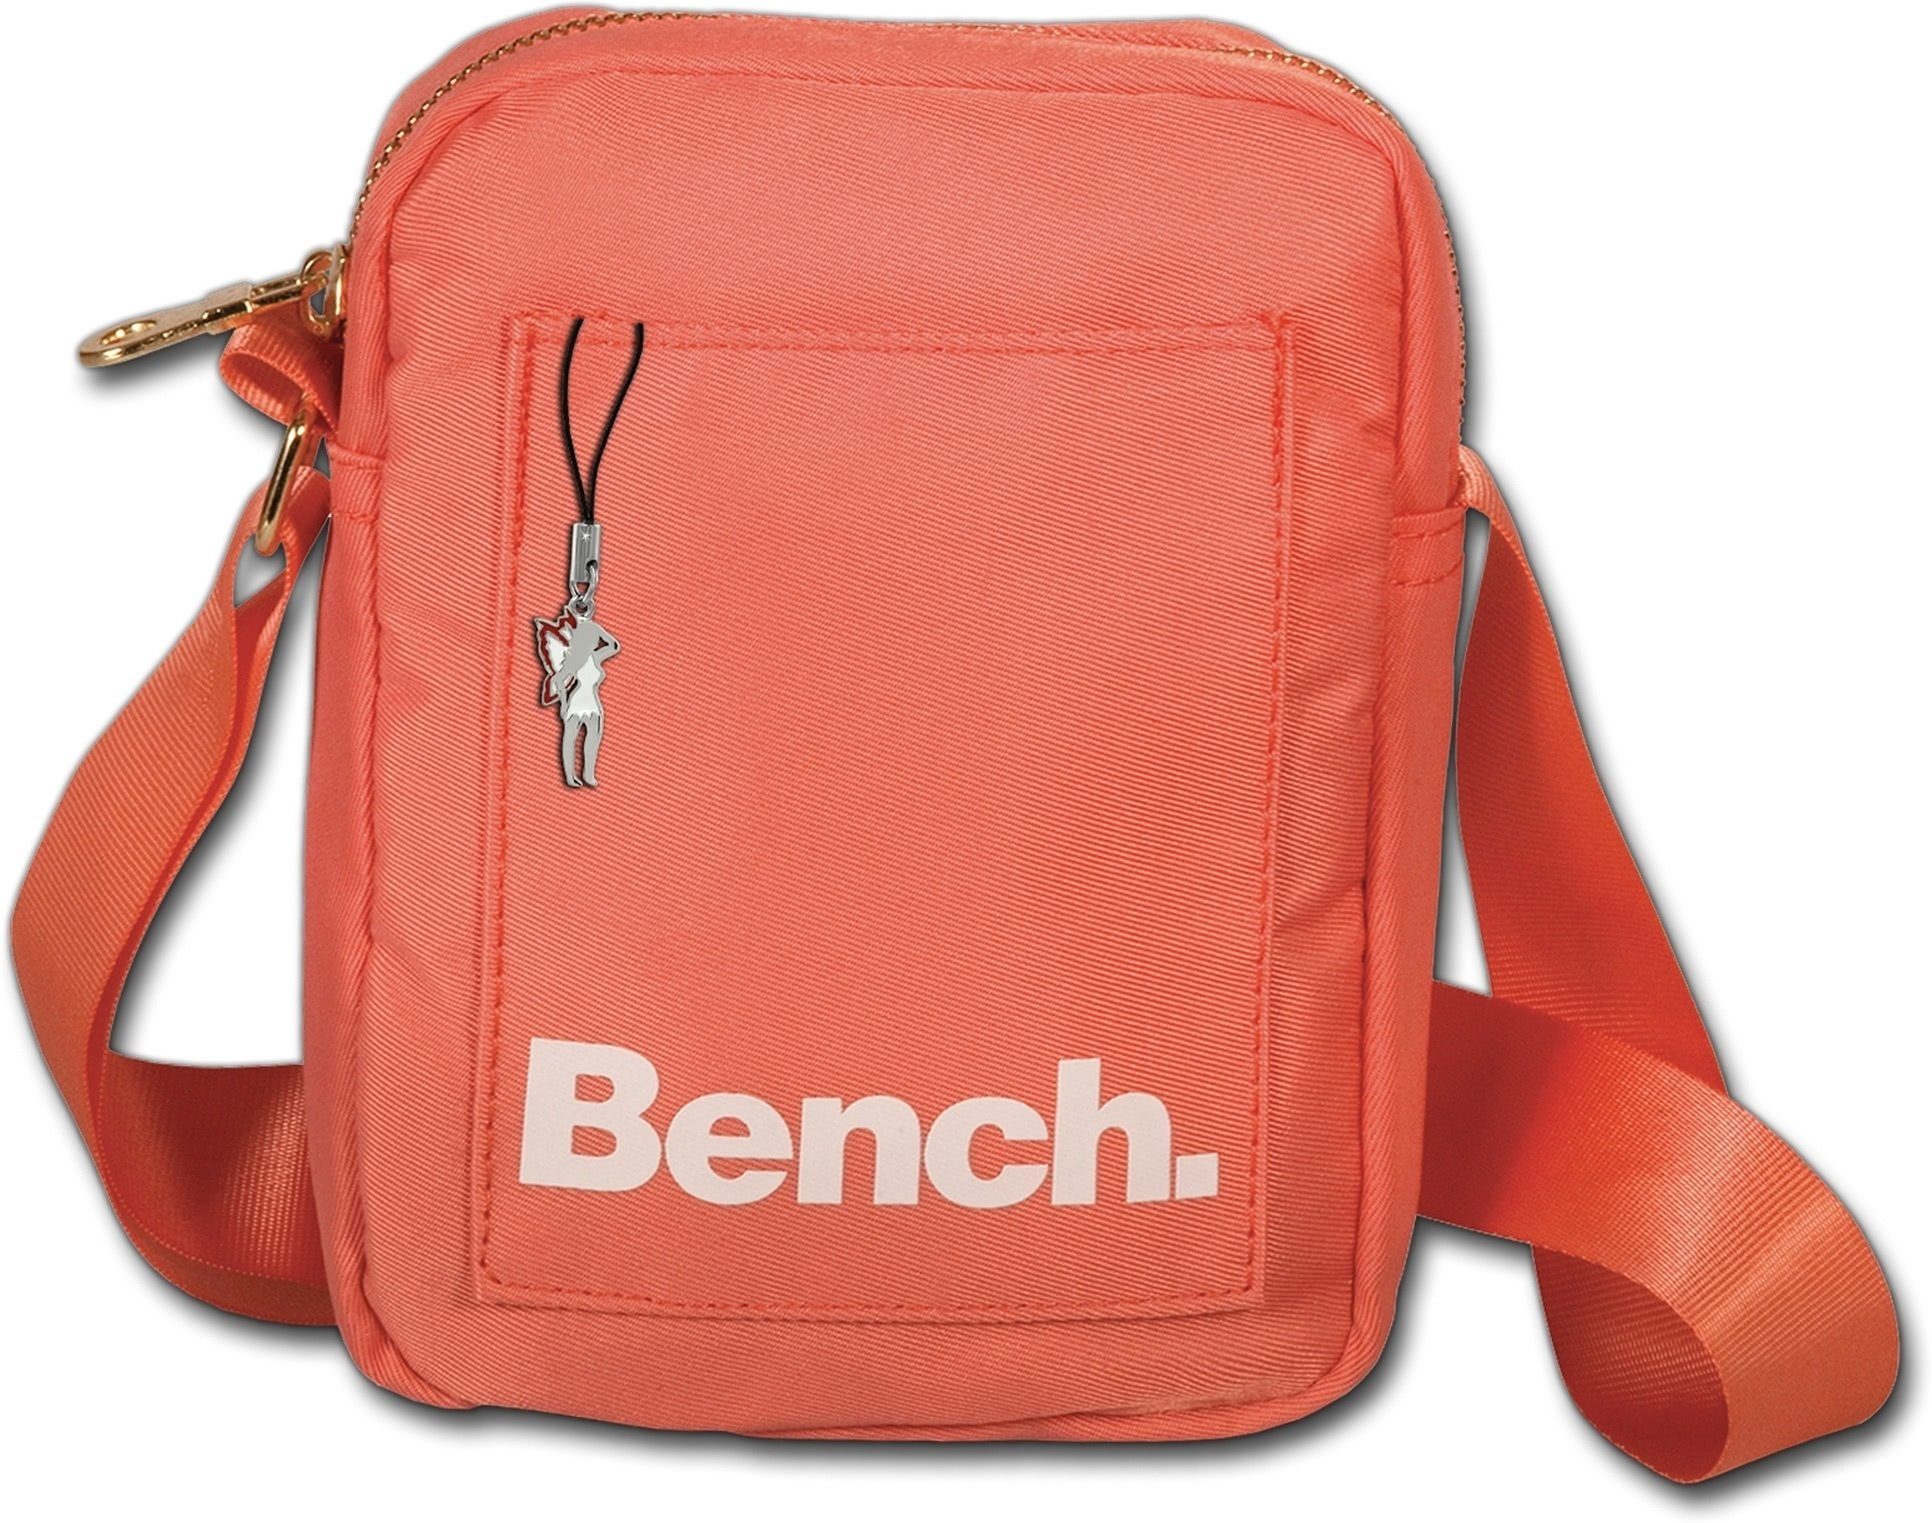 Bench. Umhängetasche »D2OTI304O Bench sportliche MiniBag Umhängetasche« ( Umhängetasche), Damen, Jugend Tasche aus Nylon, Größe ca. 14cm in orange,  koralle online kaufen | OTTO